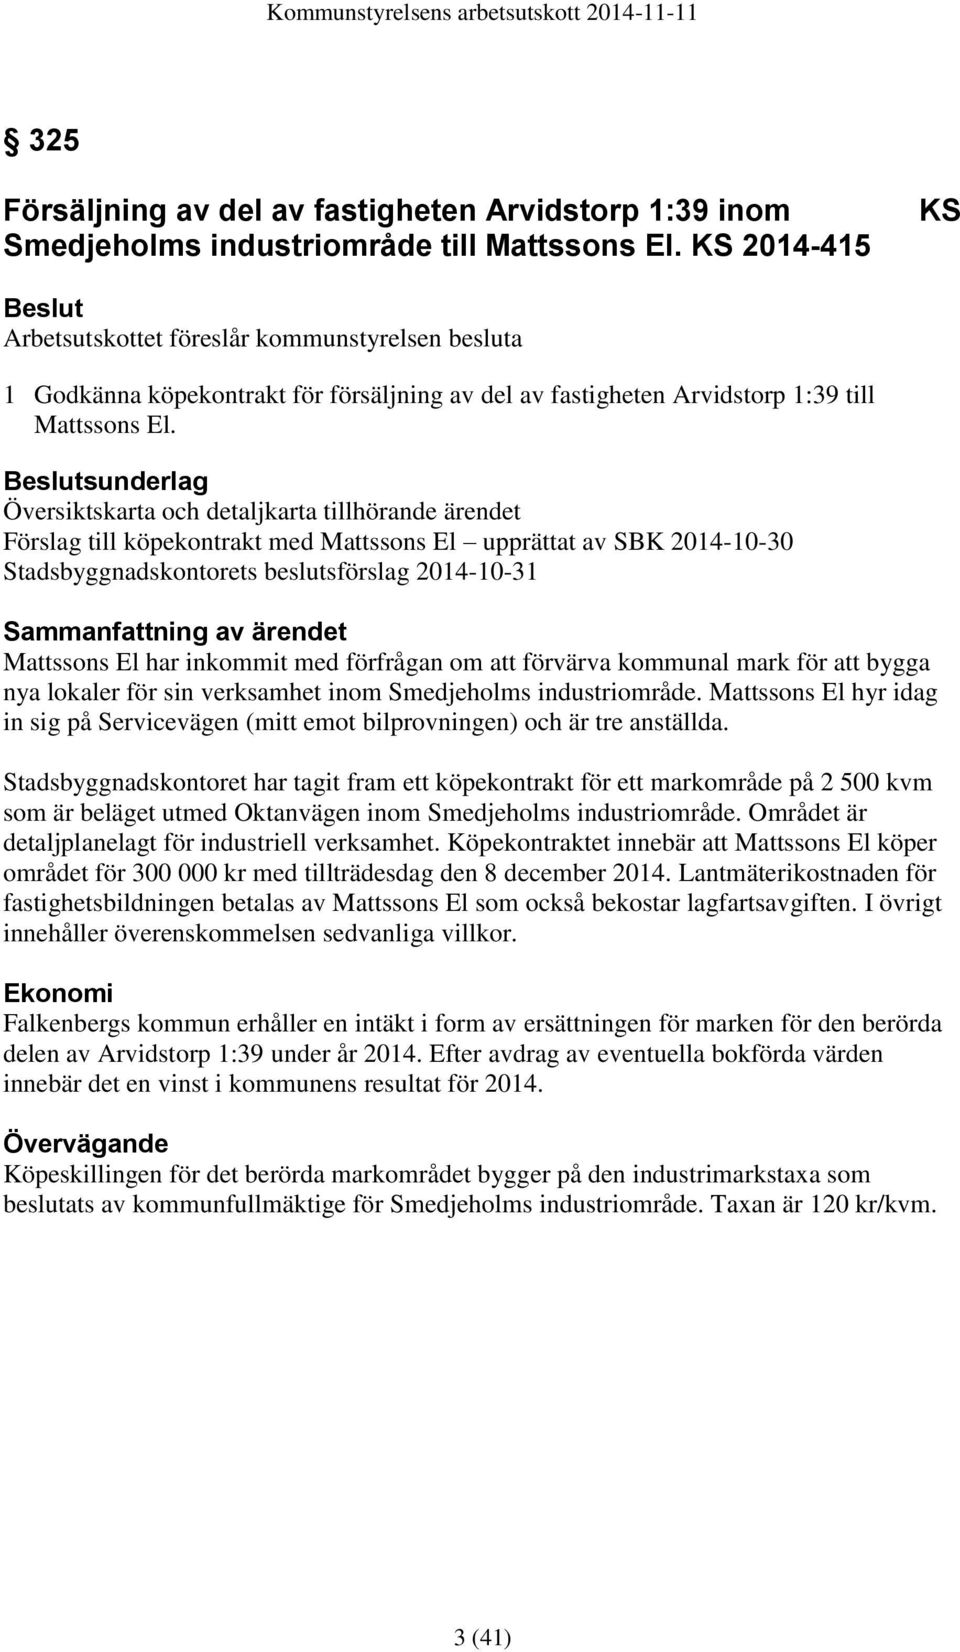 sunderlag Översiktskarta och detaljkarta tillhörande ärendet Förslag till köpekontrakt med Mattssons El upprättat av SBK 2014-10-30 Stadsbyggnadskontorets beslutsförslag 2014-10-31 Sammanfattning av